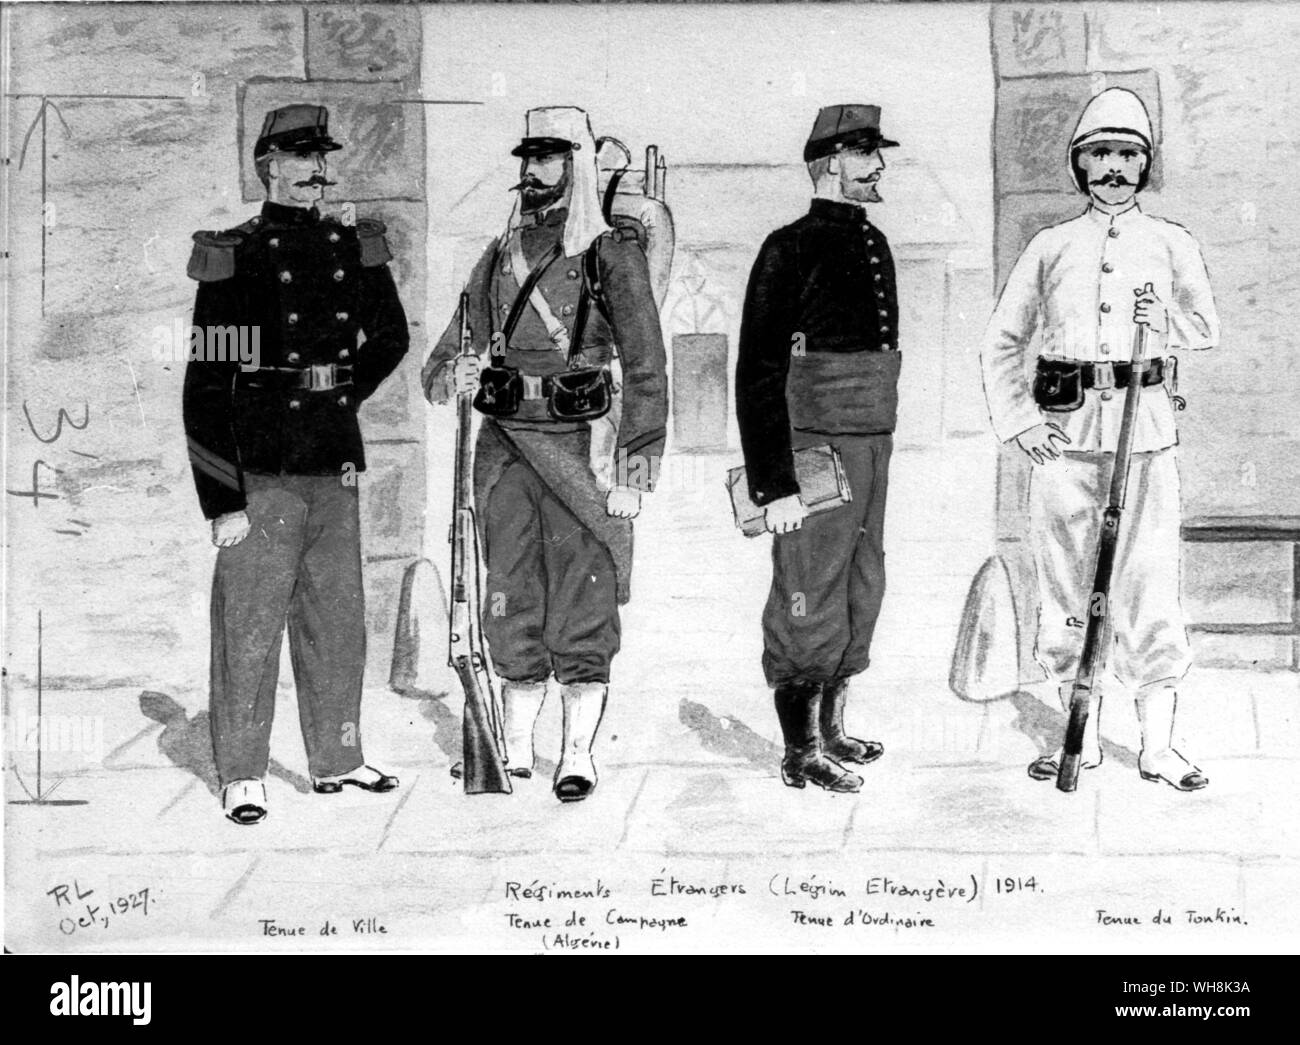 De l'uniforme de la Légion au début du vingtième siècle (de gauche à droite). L'uniforme de combat (Algérie). uniforme de service (1914). Le service uniforme (Tonkin). Banque D'Images